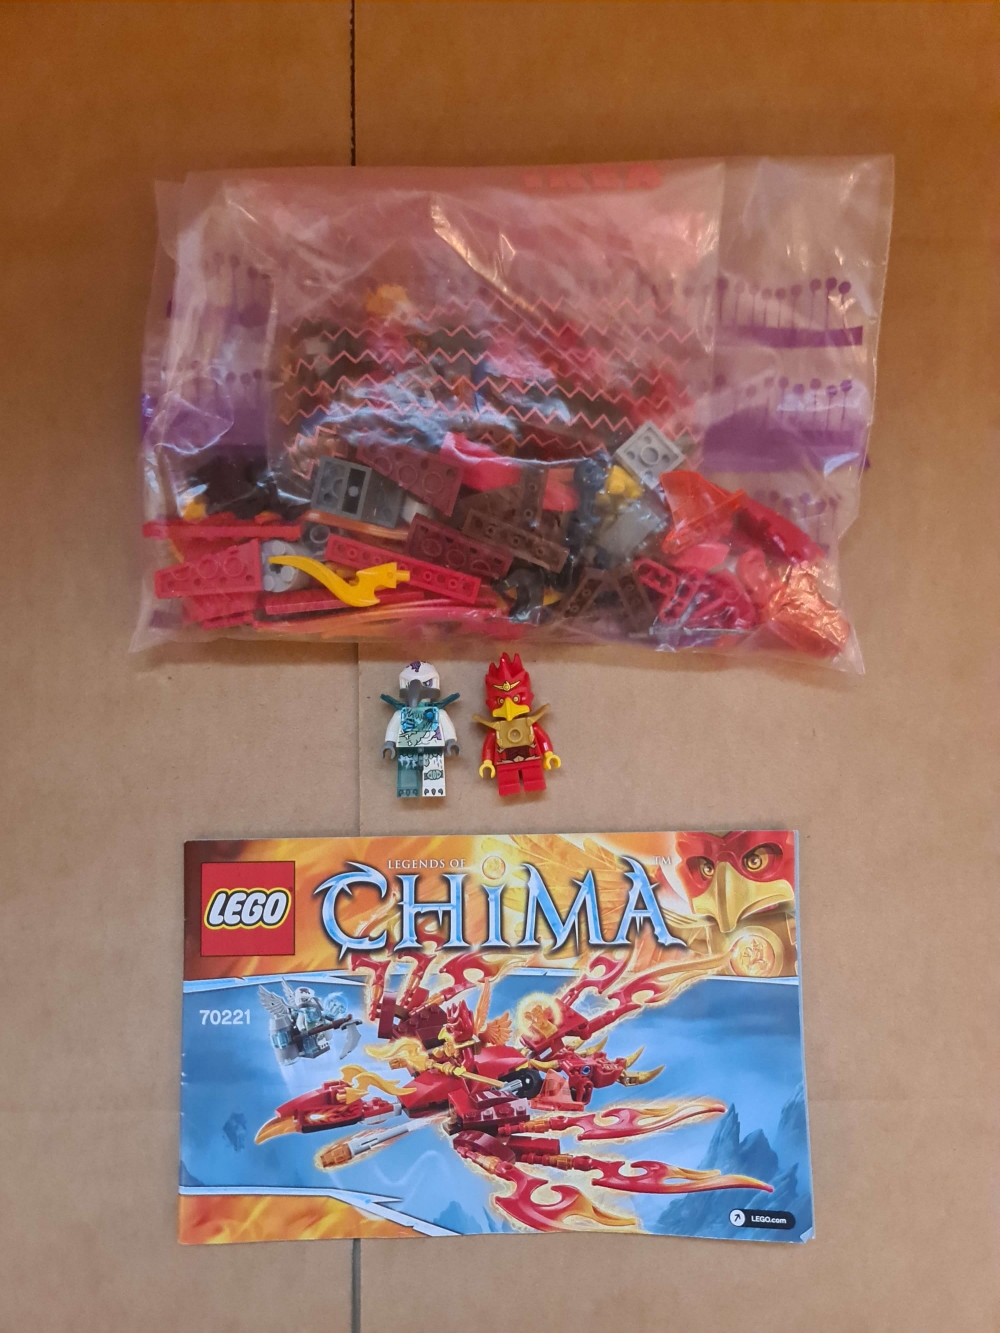 Sett 70221 fra Lego Chima serien.

Meget pent sett. Komplett med manual. 